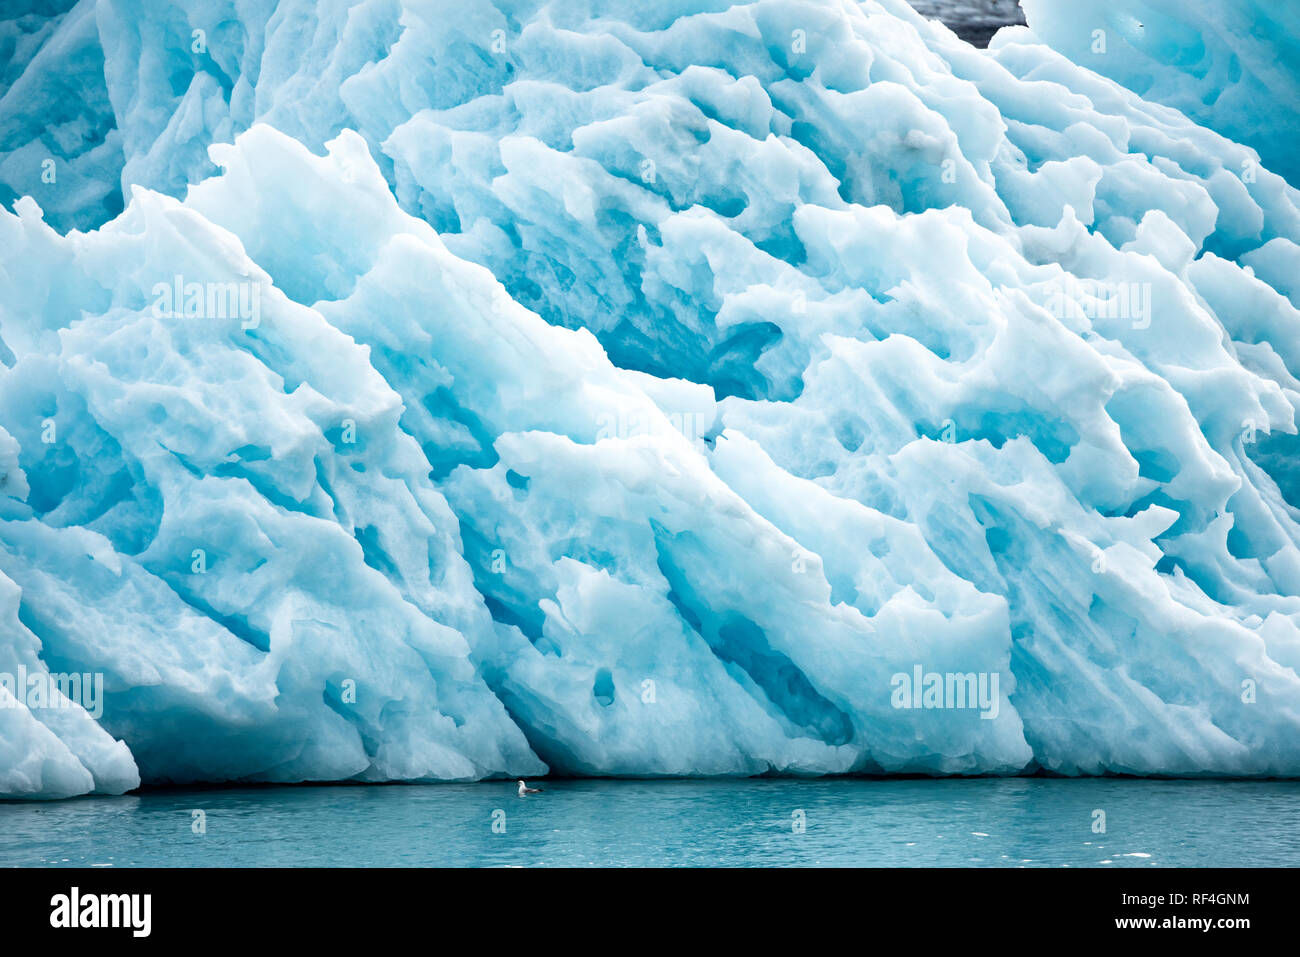 LONGYEARBYEN, Svalbard - die Eisberge und Gletscher in der Nähe von Longyearbyen, im arktischen Archipel von Svalbard. Diese atemberaubenden eisigen Strukturen verkörpern nicht nur die schroffe Schönheit der arktischen Wildnis, sondern dienen auch als entscheidende Indikatoren für den Klimawandel, ihre Veränderungen und Schmelzen, die wichtige Einblicke in die Trends der globalen Erwärmung offenbaren. Stockfoto